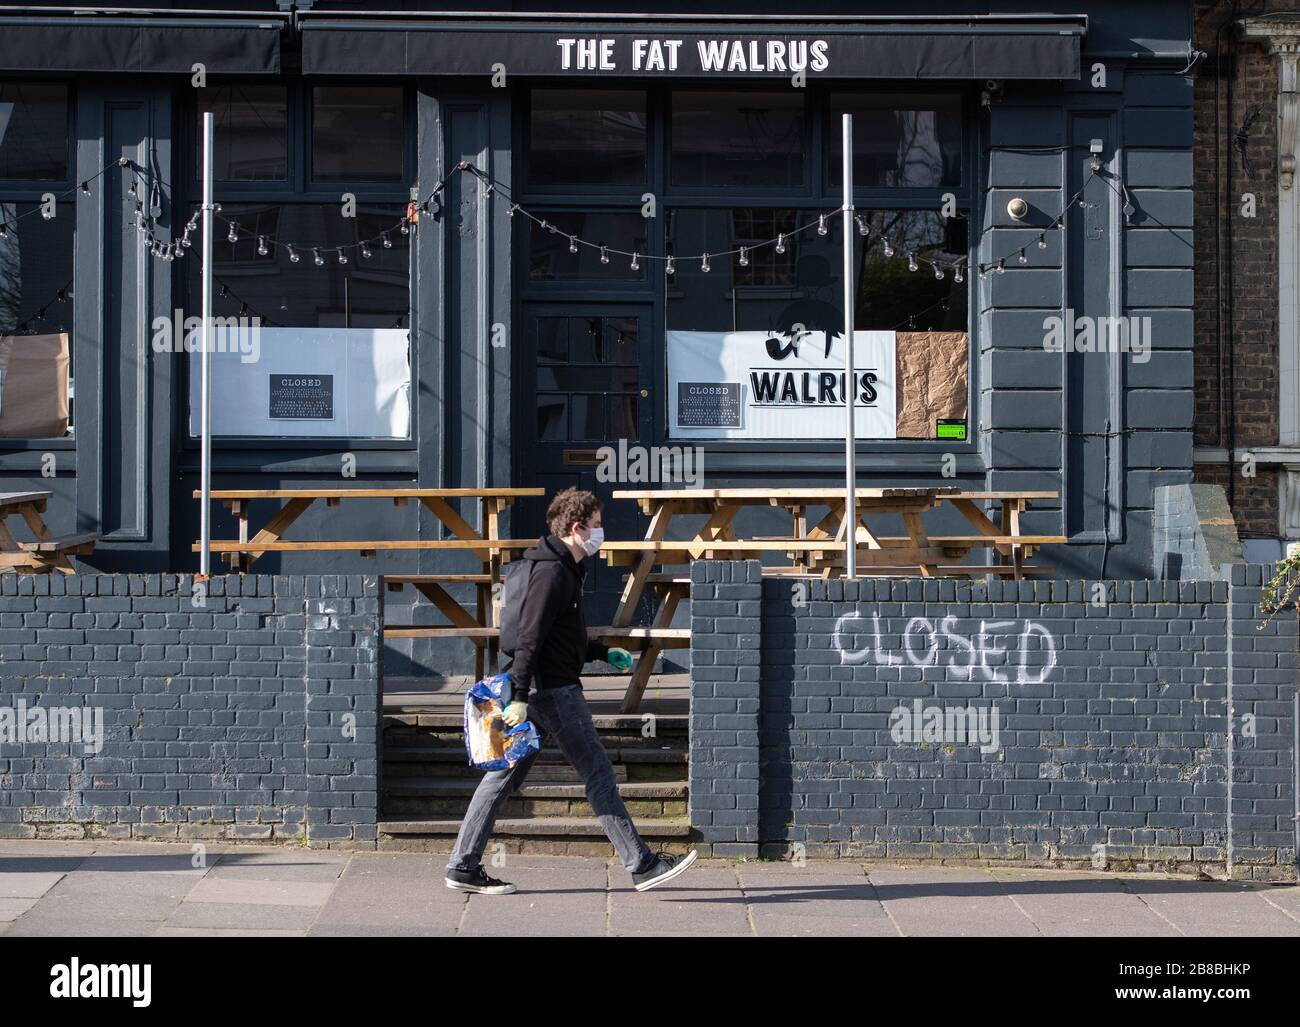 Allgemeiner Blick auf eine geschlossene Kneipe in New Cross im Süden Londons, nachdem die Regierung die Schließung von Bars, Clubs und Restaurants aufgrund des Ausbruchs von Coronavirus angeordnet hatte. Stockfoto